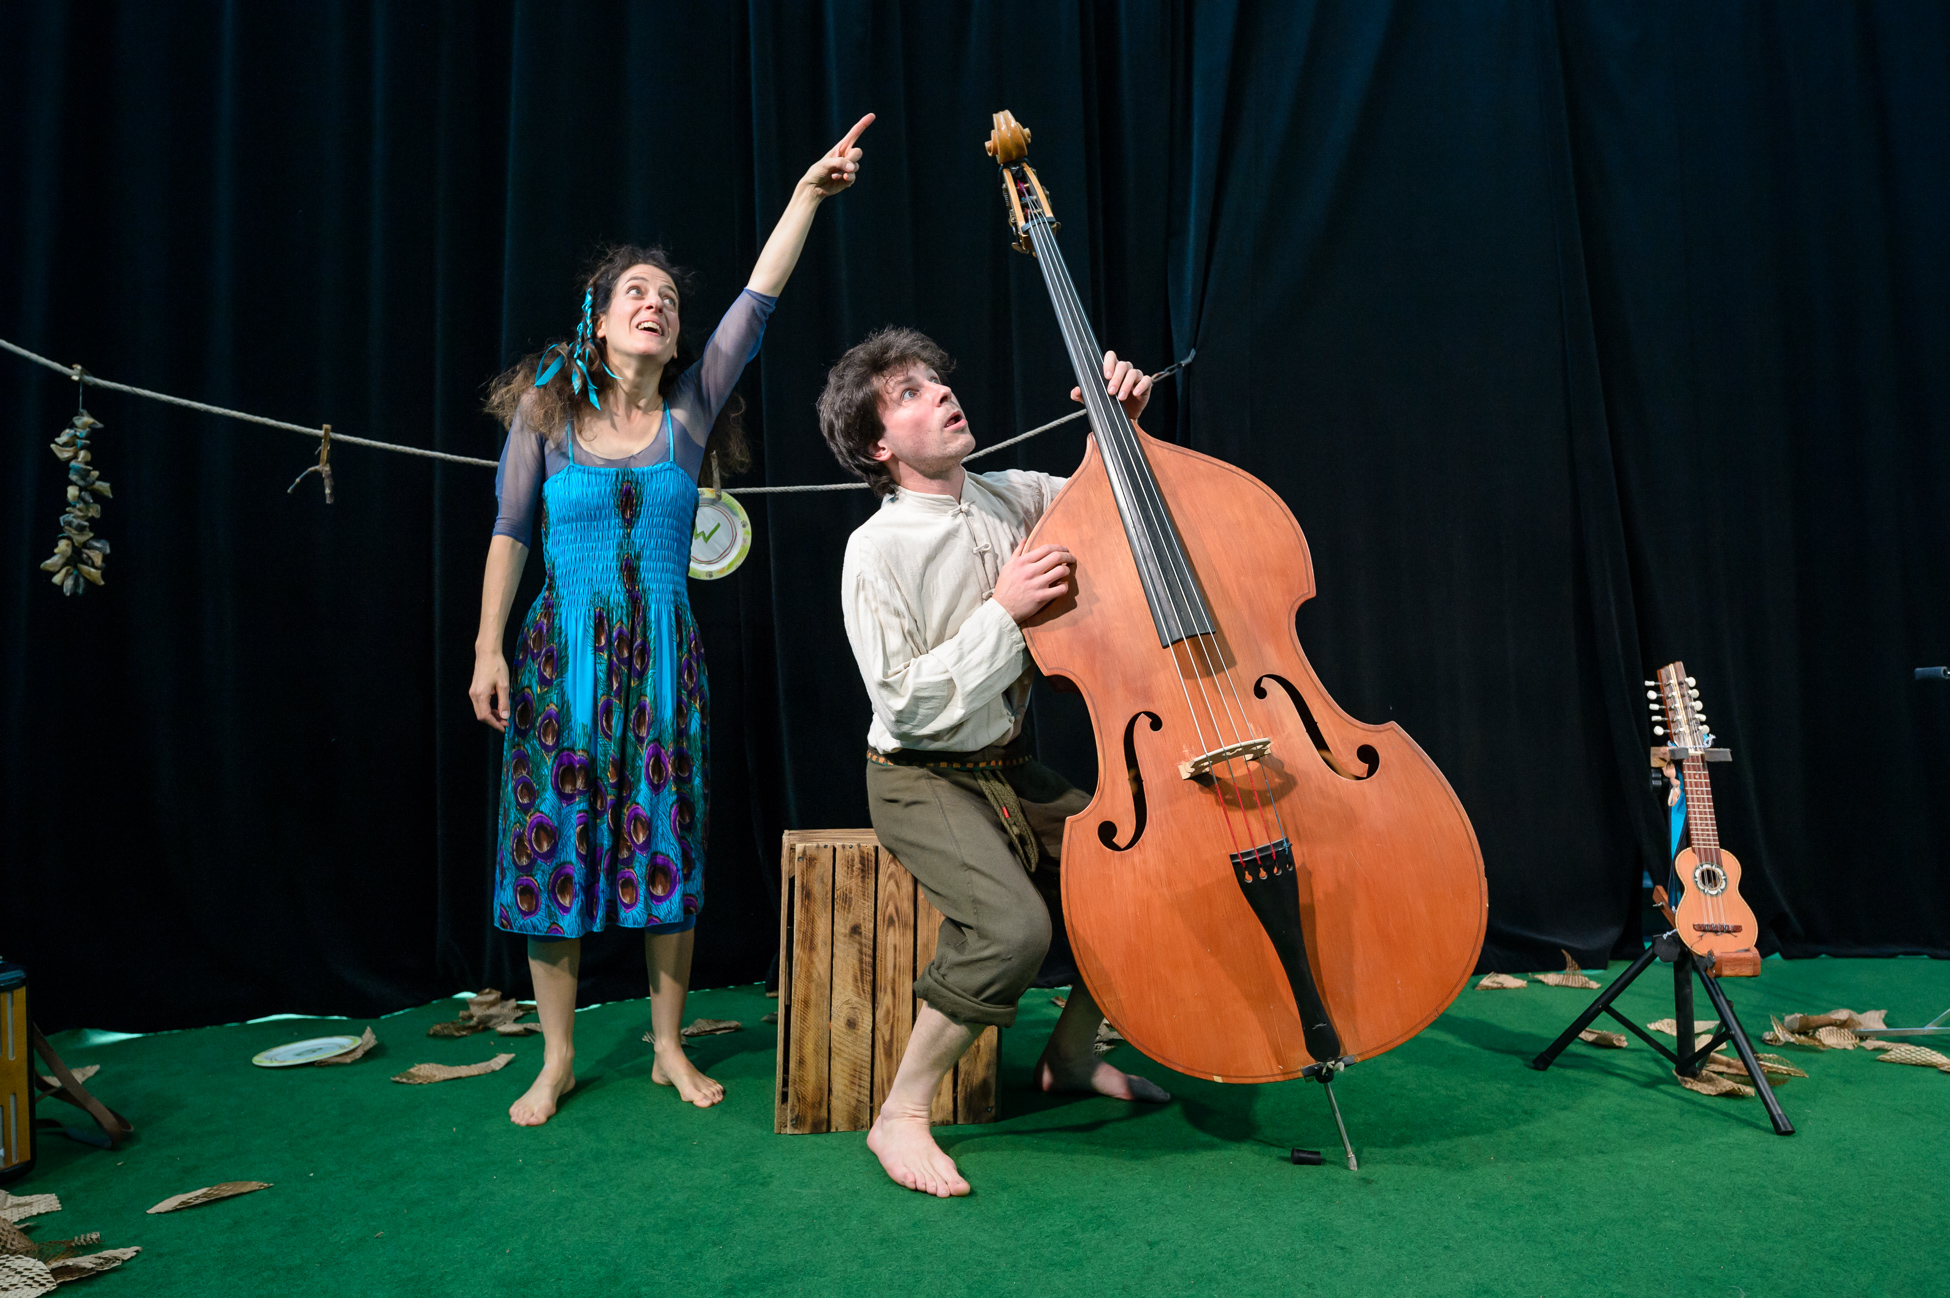 Cellist und Frau mit blauem Kleid entdecken etwas an der Decke